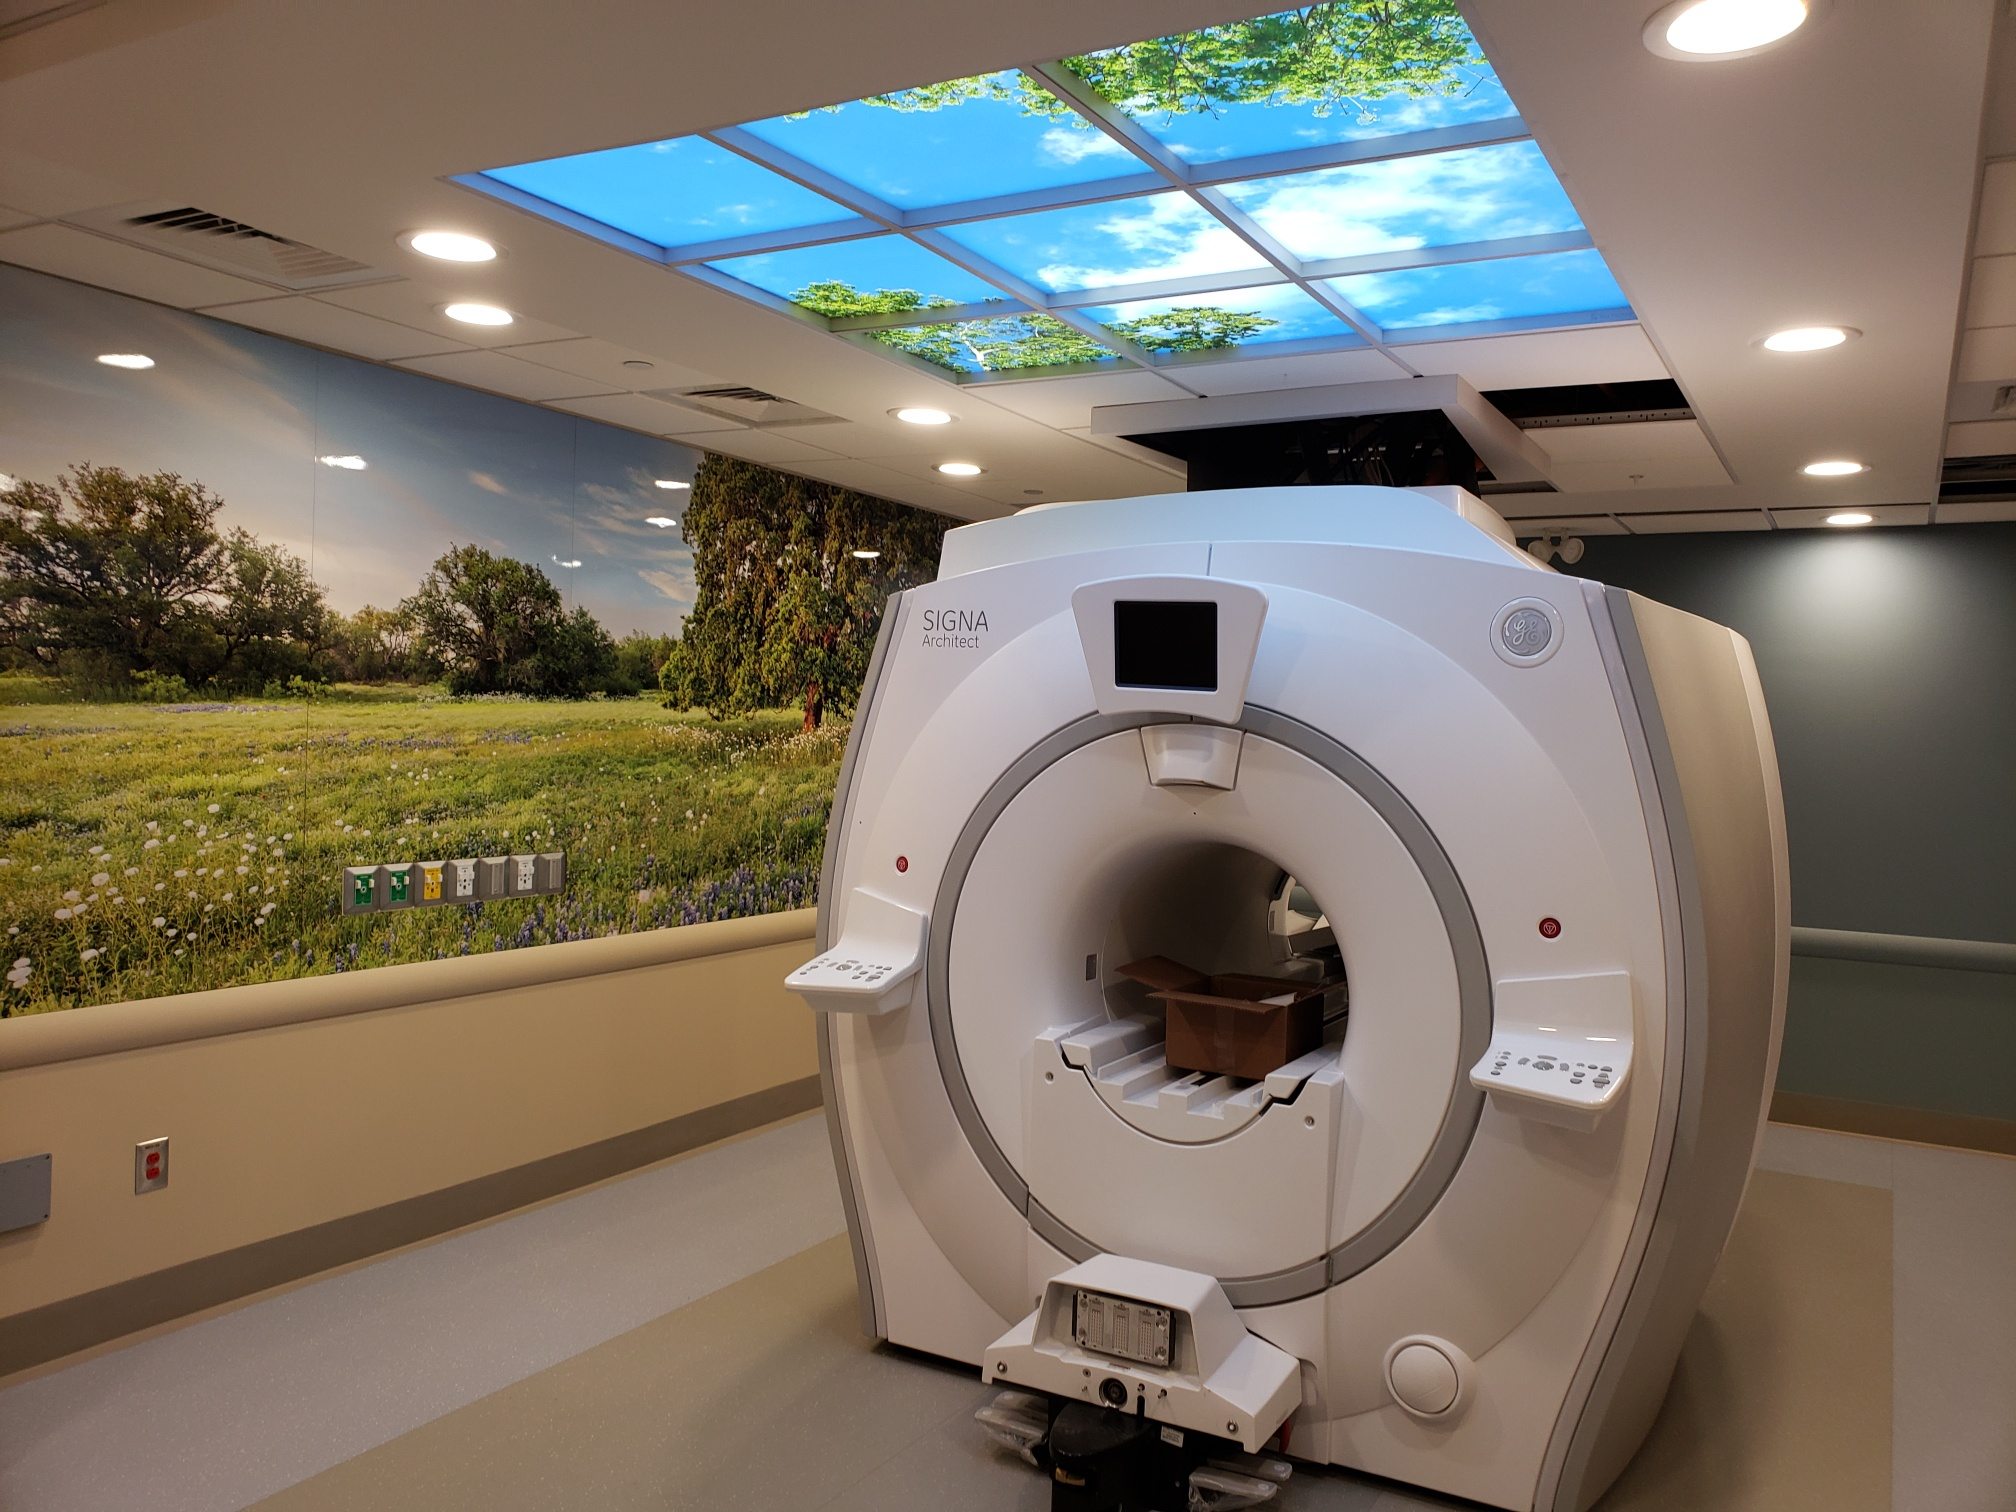 MRI Equipment